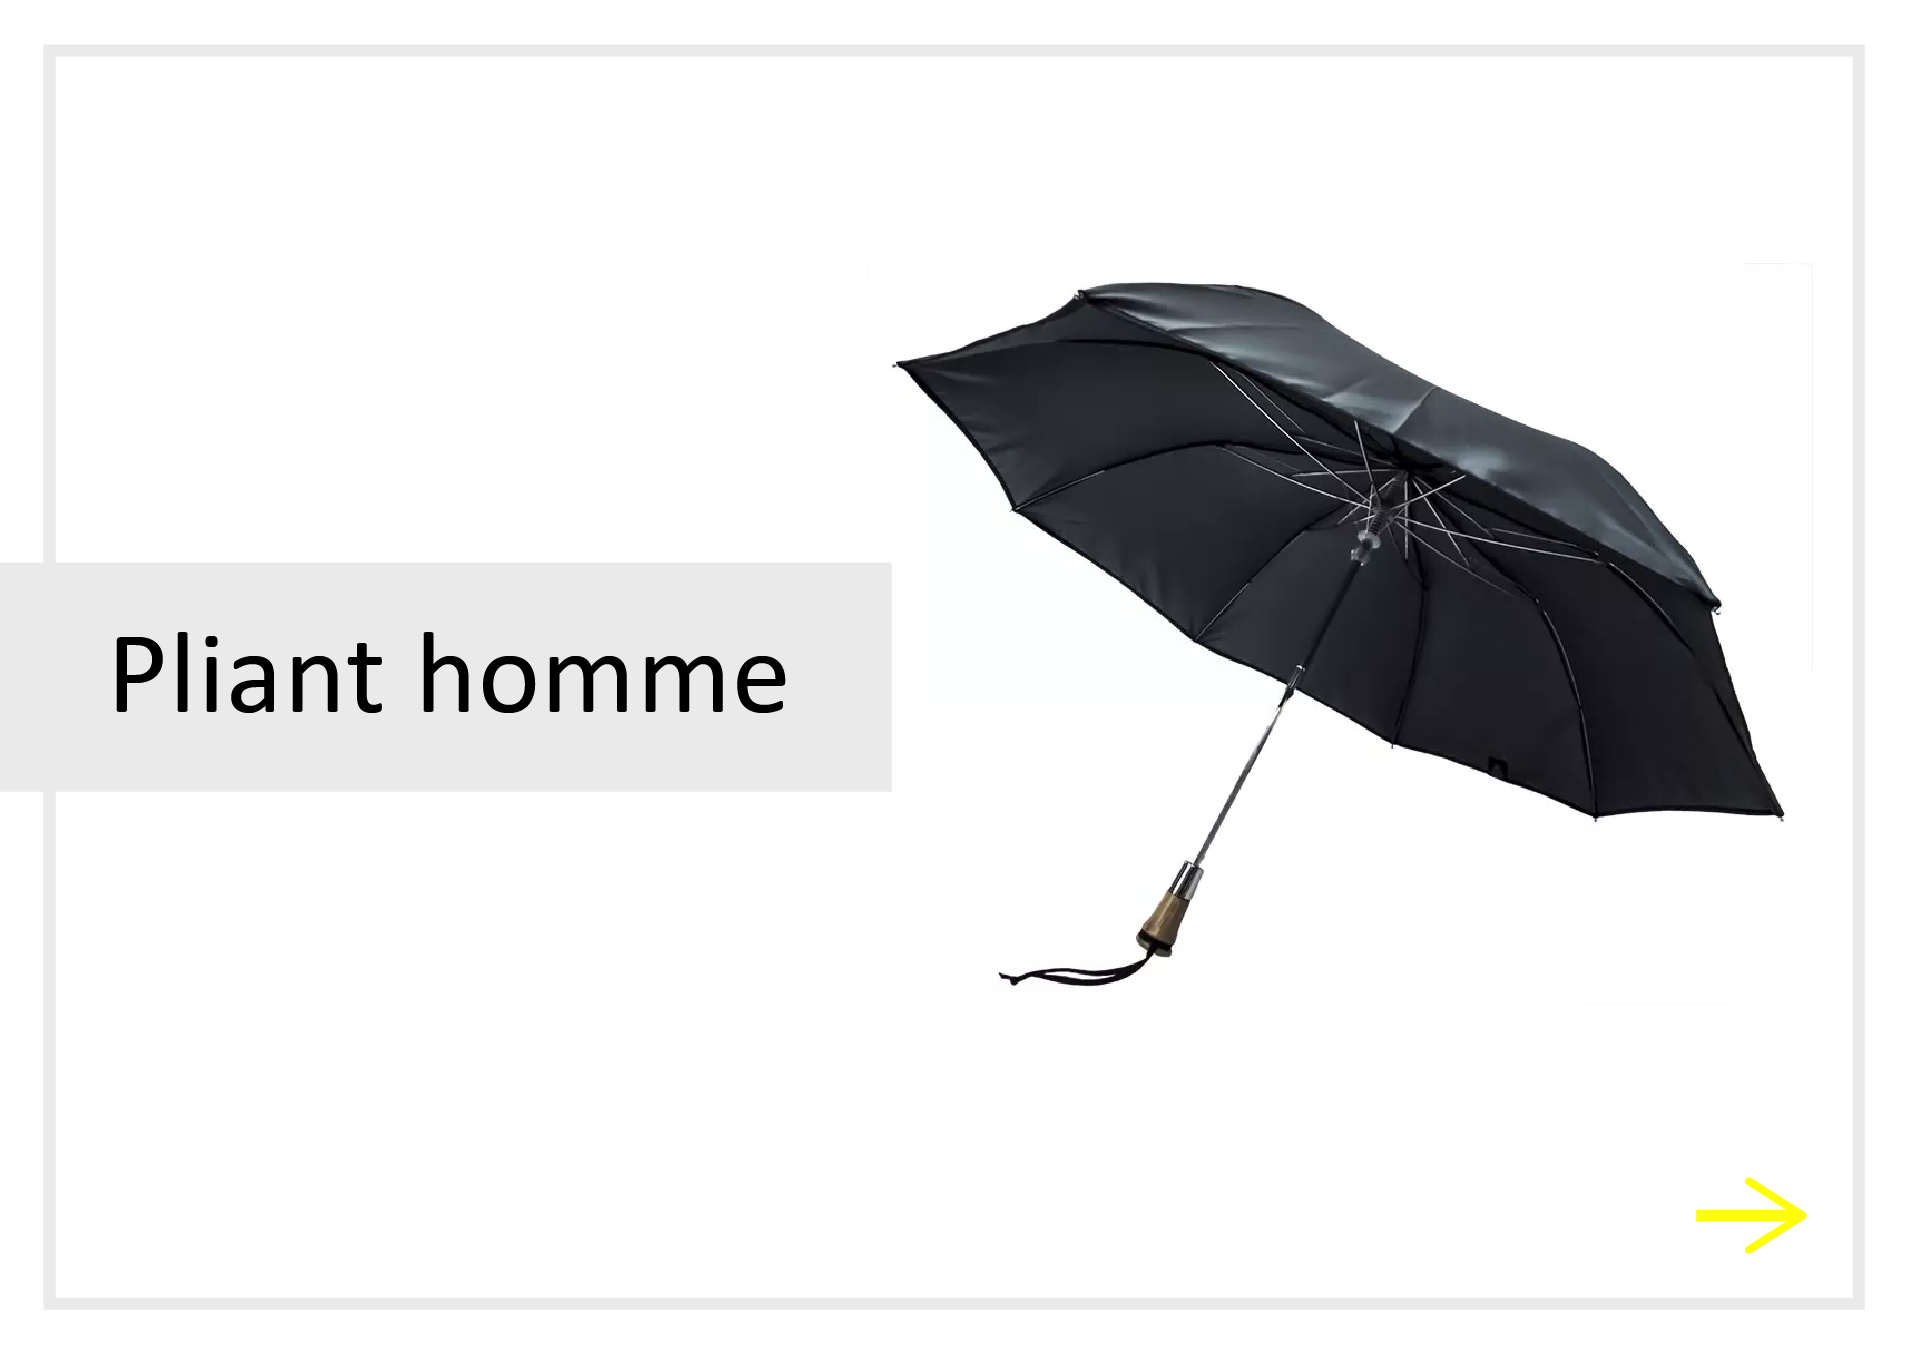 lien parapluies pliants homme